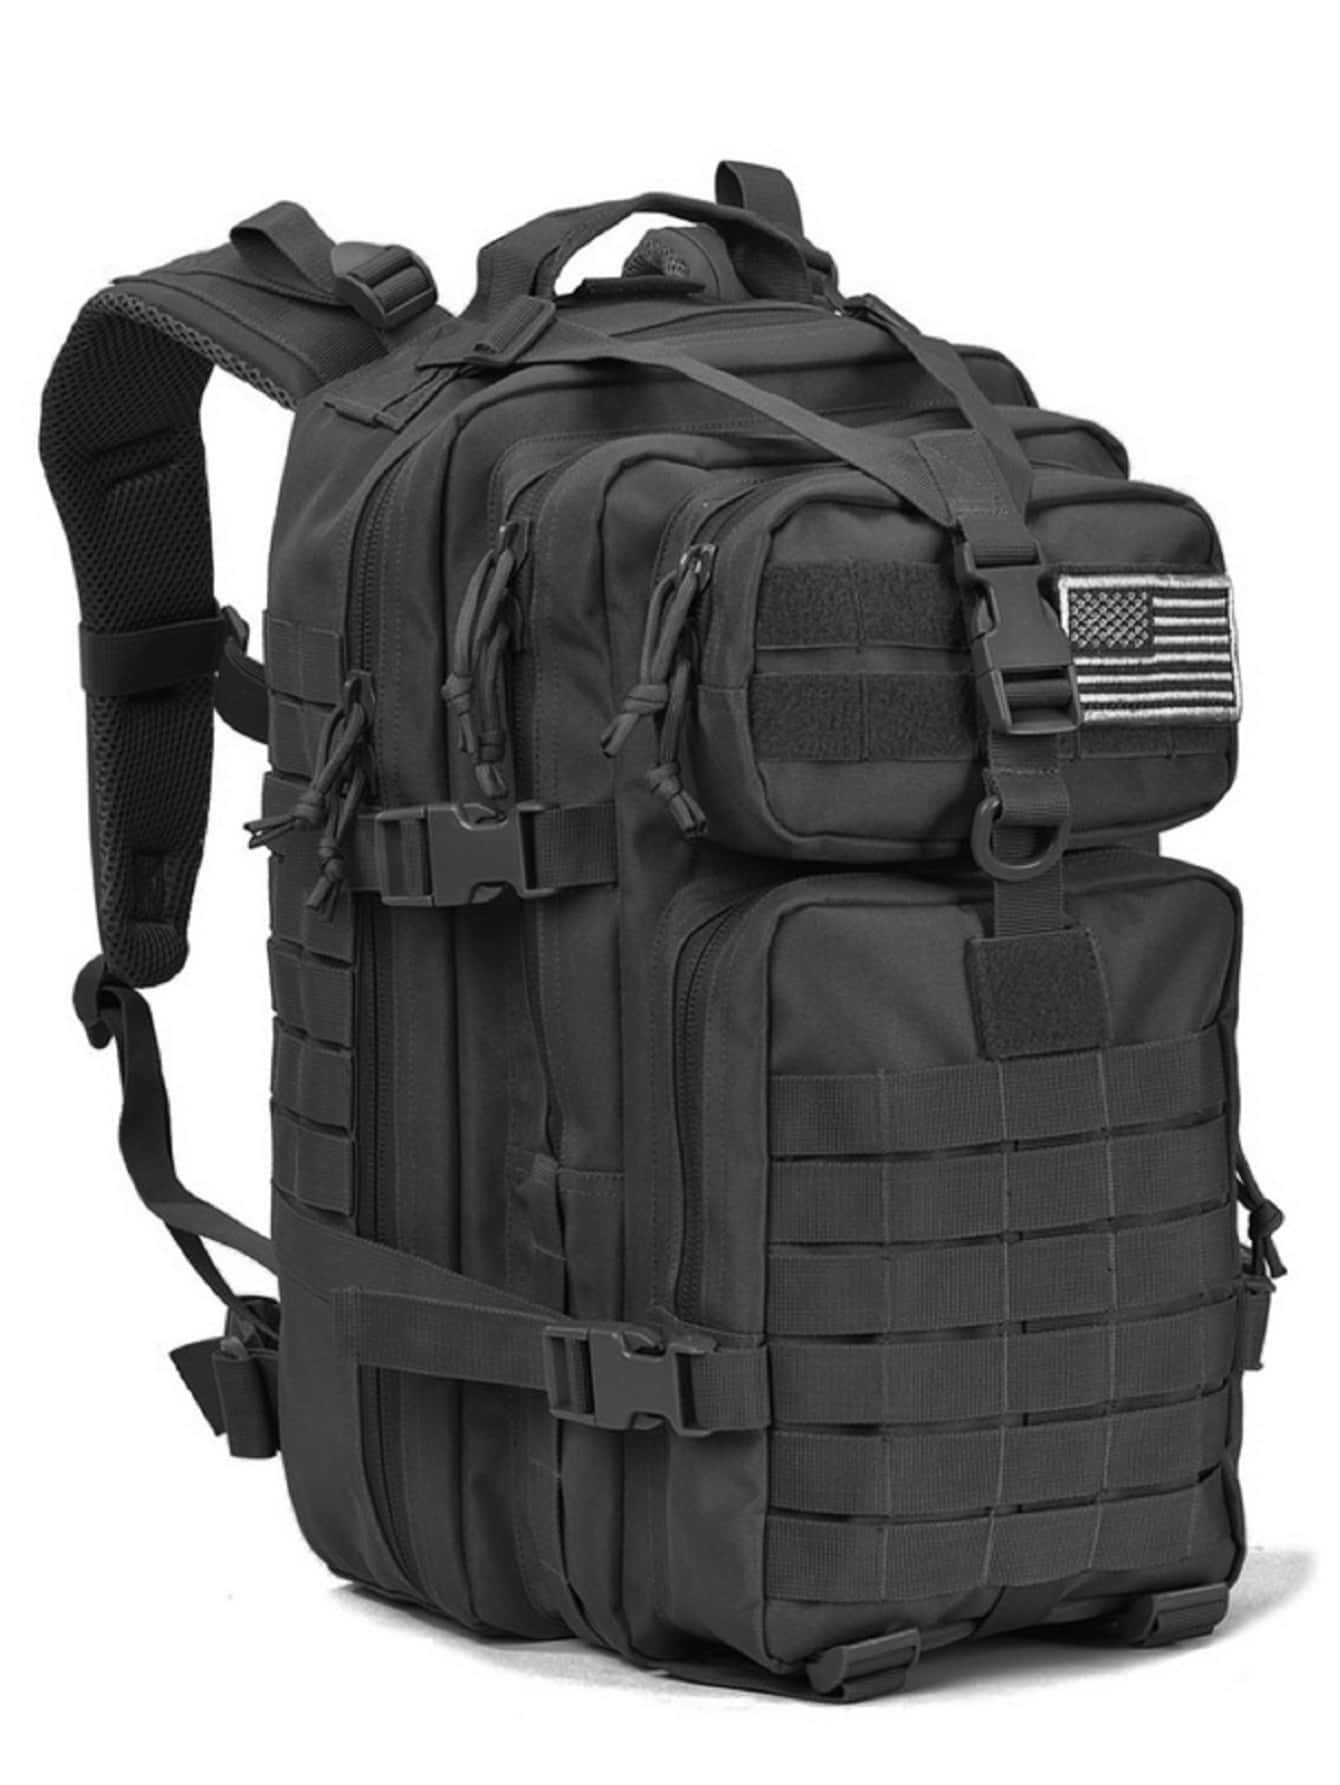 17-дюймовый водонепроницаемый нейлоновый рюкзак 50 л 1000D, черный mark ryden водонепроницаемый дорожный рюкзак rfid противоугонный 17 дюймовый школьный рюкзак для ноутбука mr5748 черный 17 дюймов